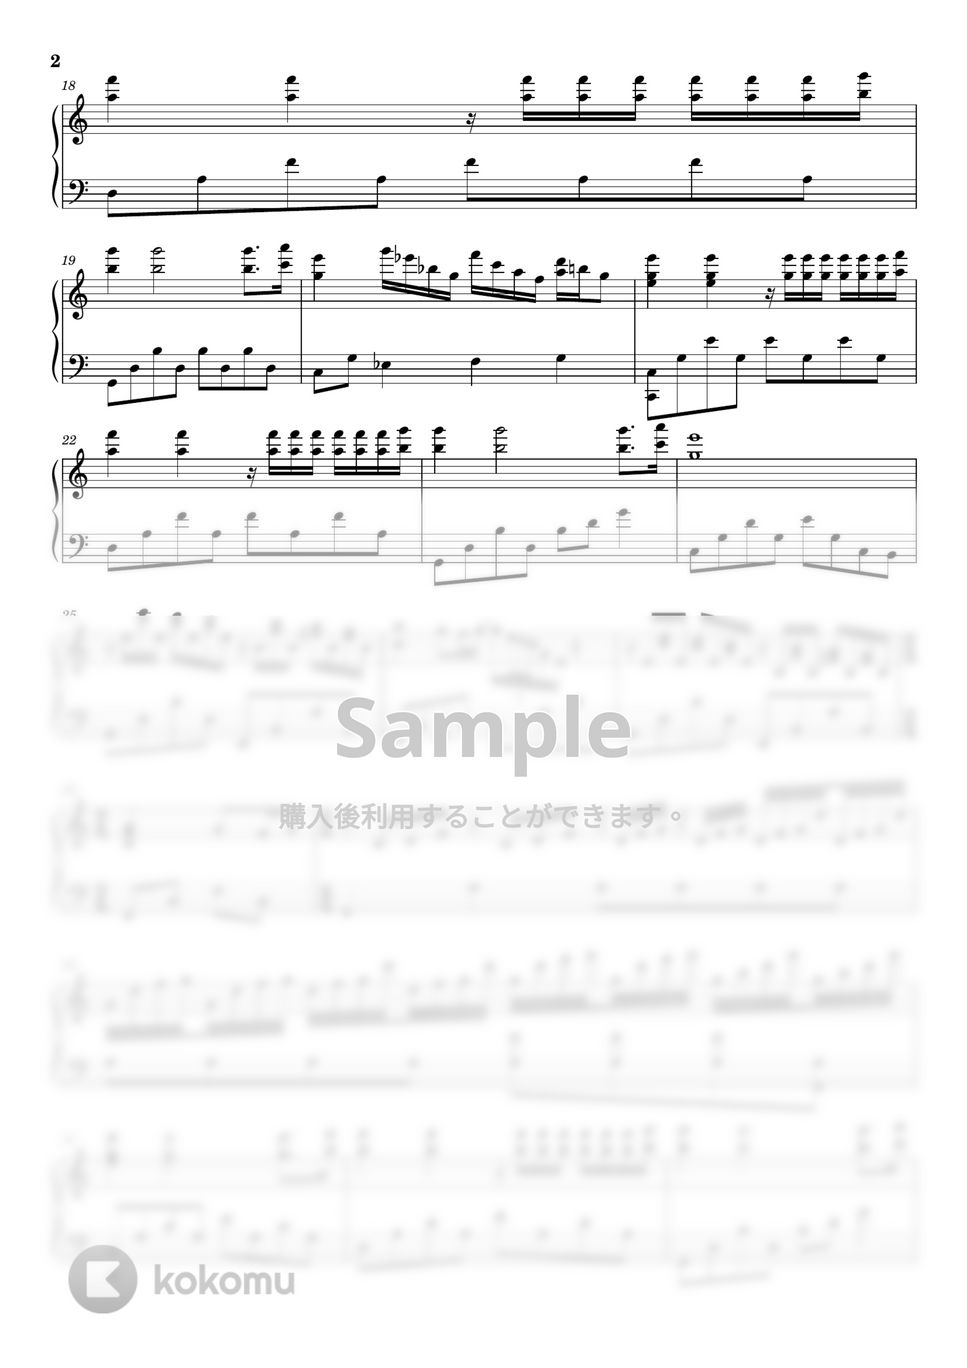 リチャード・クレイダーマン - 渚のアデリーヌ (ピアノソロ上級) by pianon